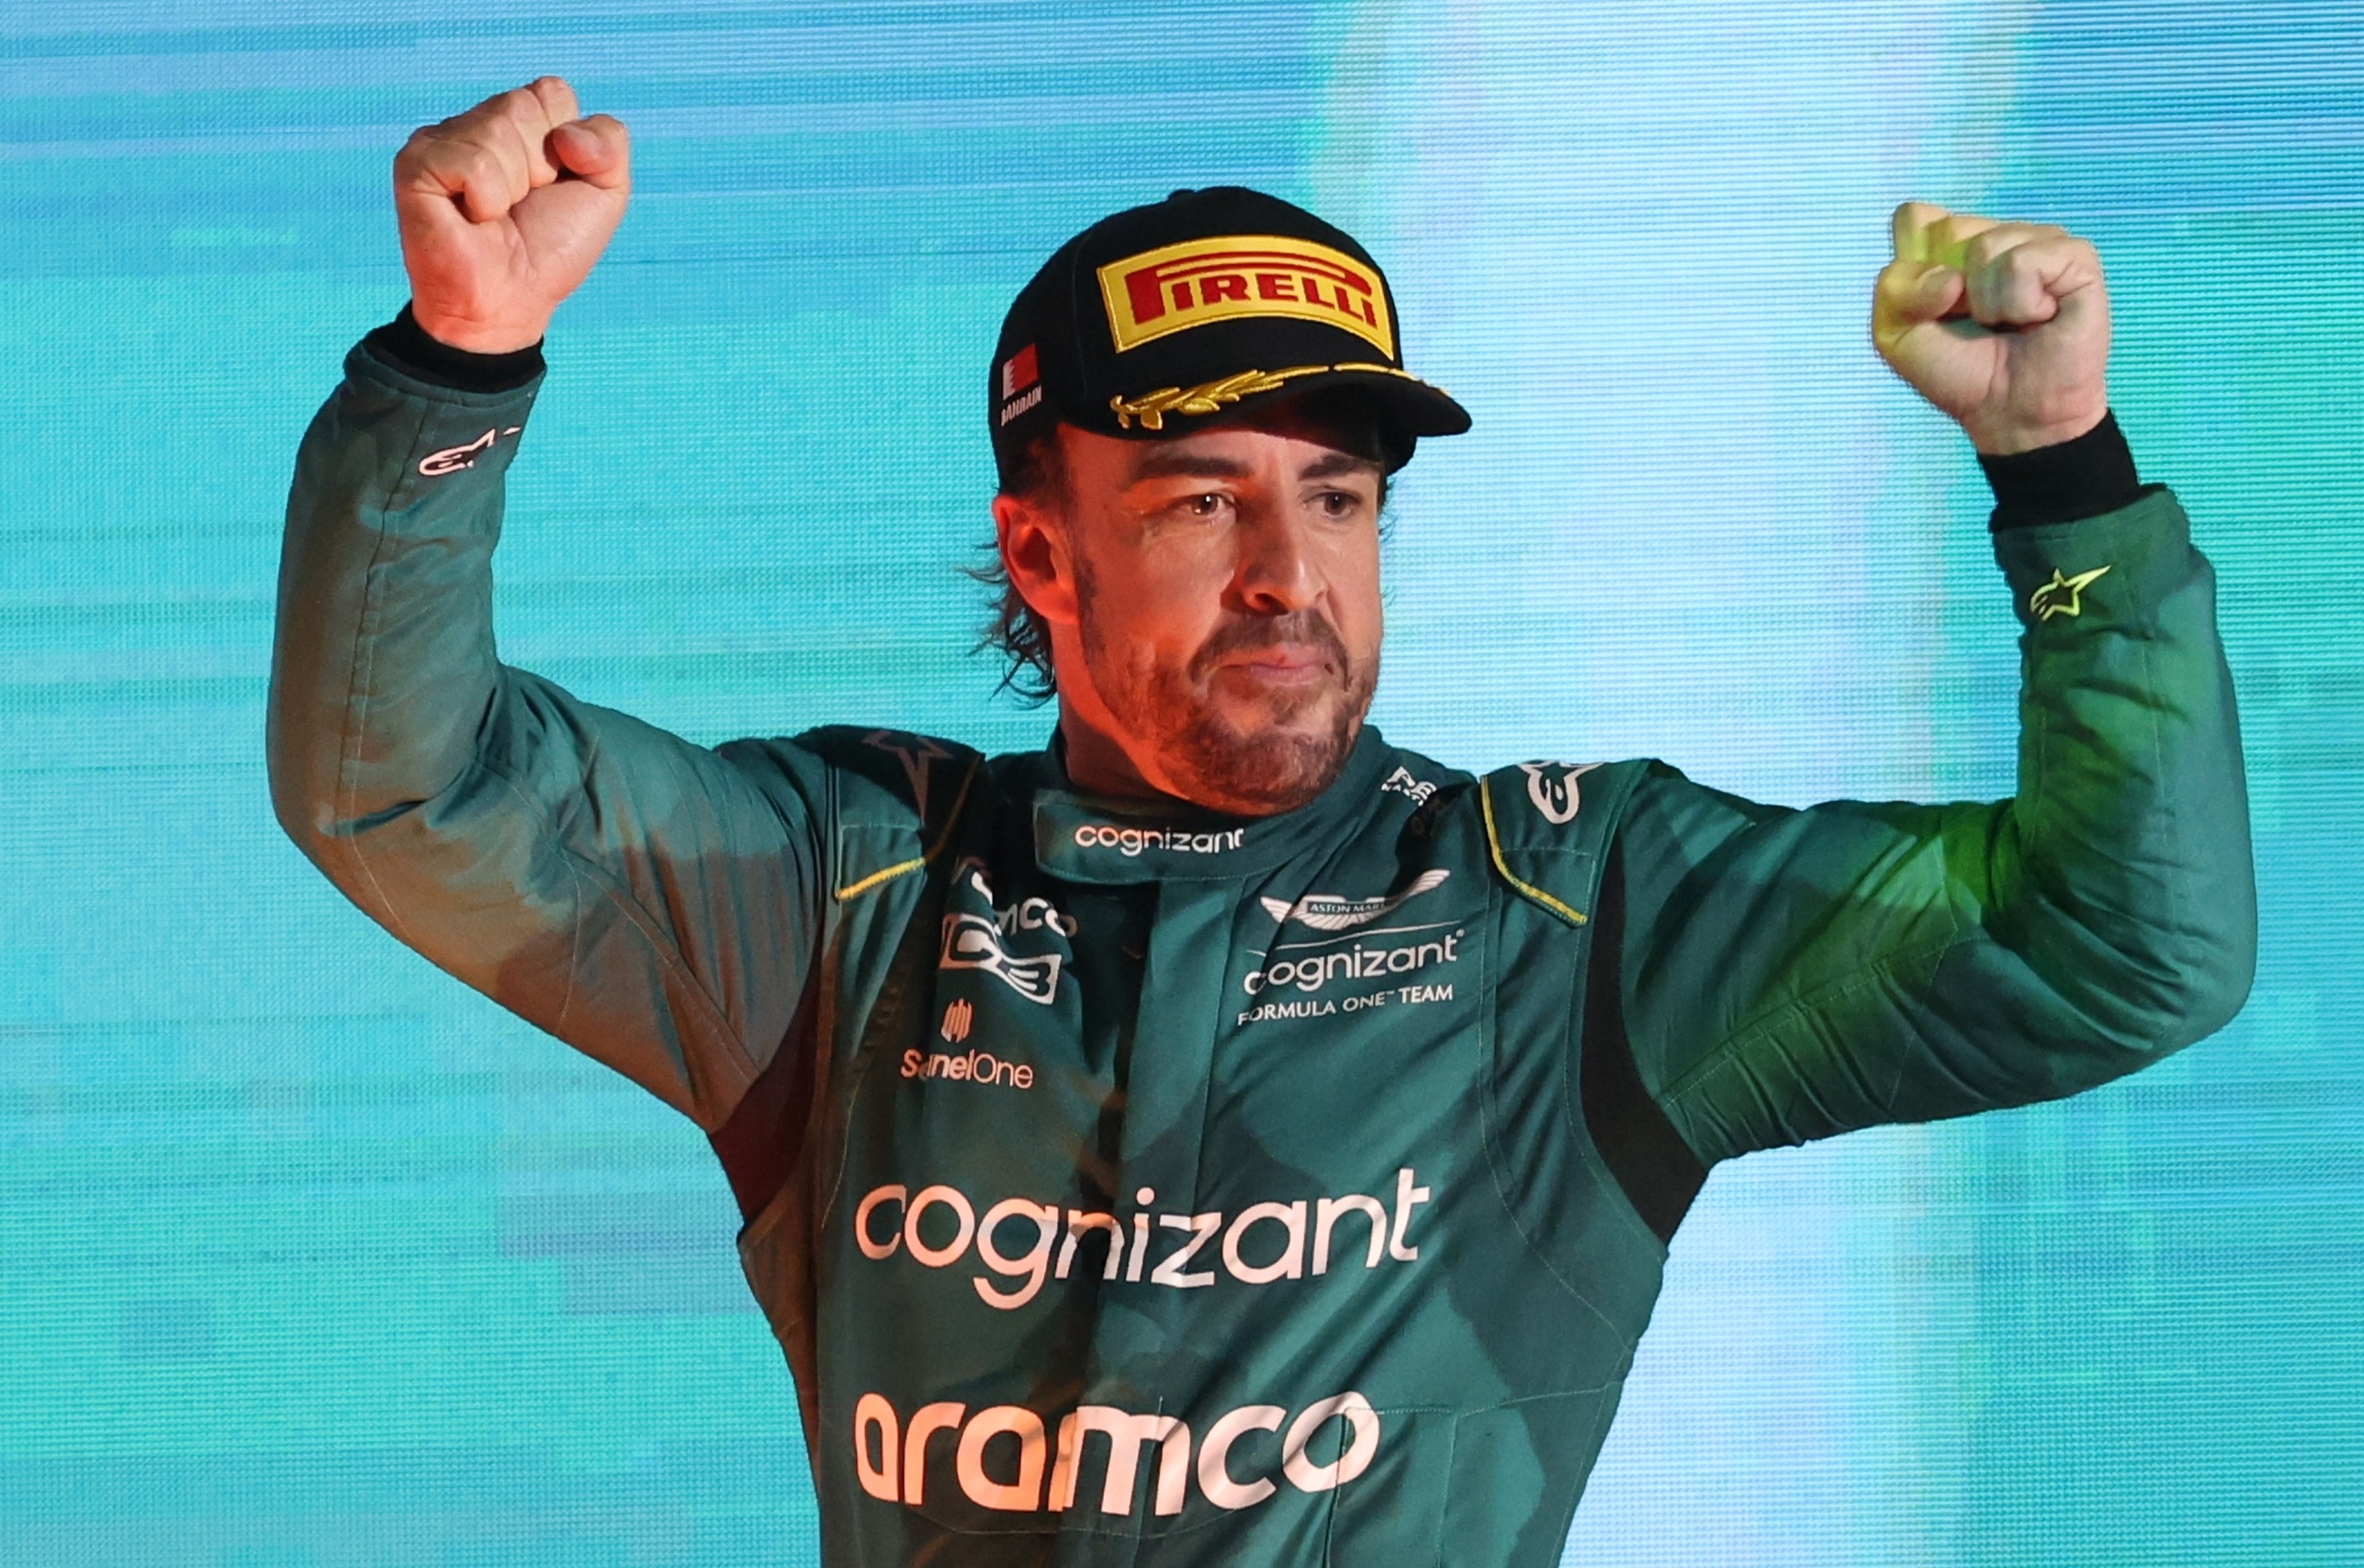 El gigante de la Fórmula 1 que "monitoriza" a Fernando Alonso, habrá oferta si gana 4 carreras